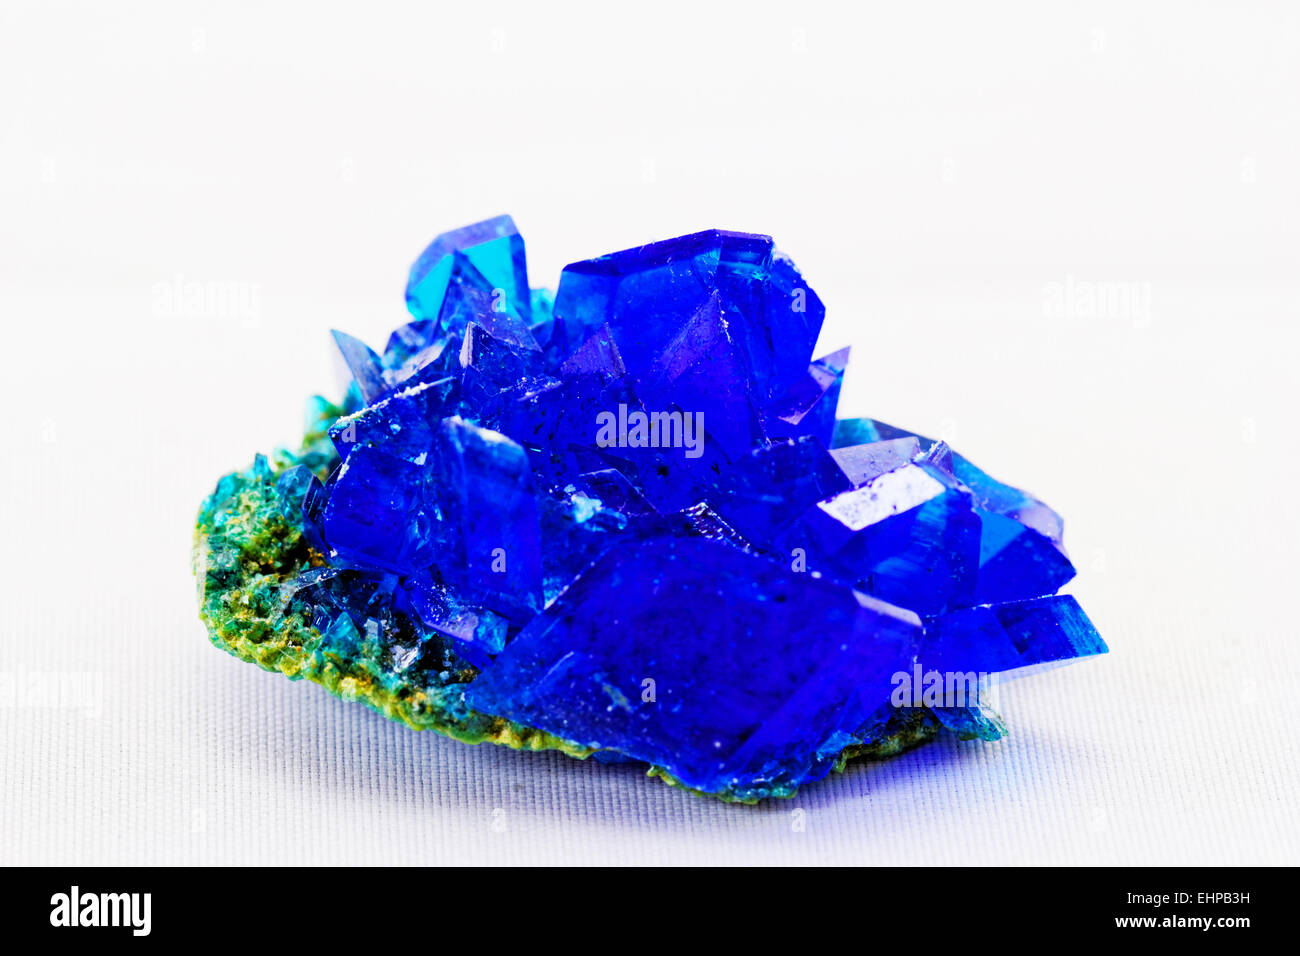 Les cristaux de sulfate de cuivre - vitriol bleu Photo Stock - Alamy